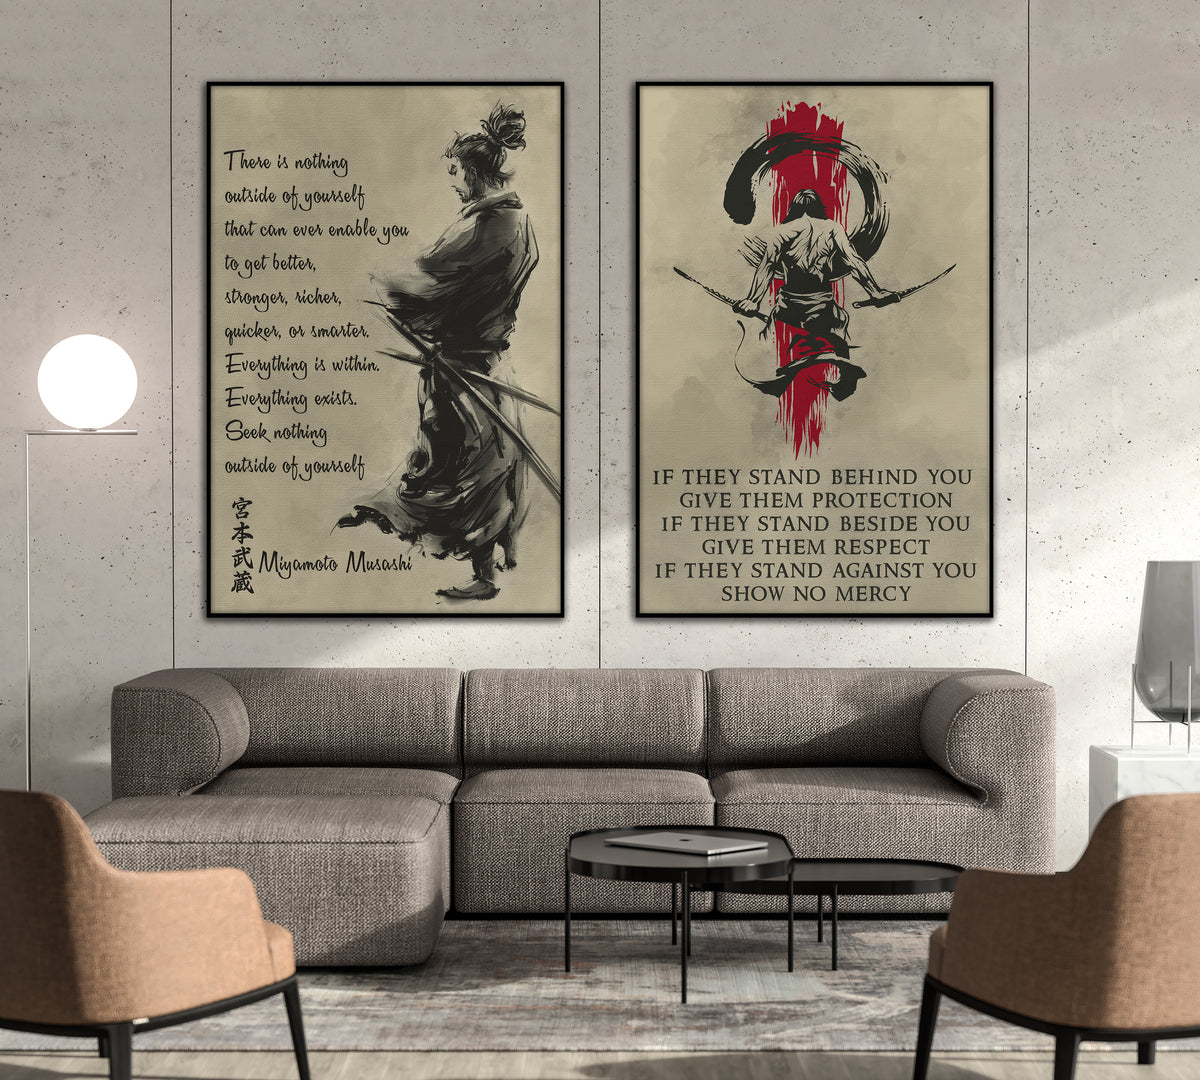 SA053 + SA054 - IF - Outside Of Yourself - Home Decoration - Samurai Poster